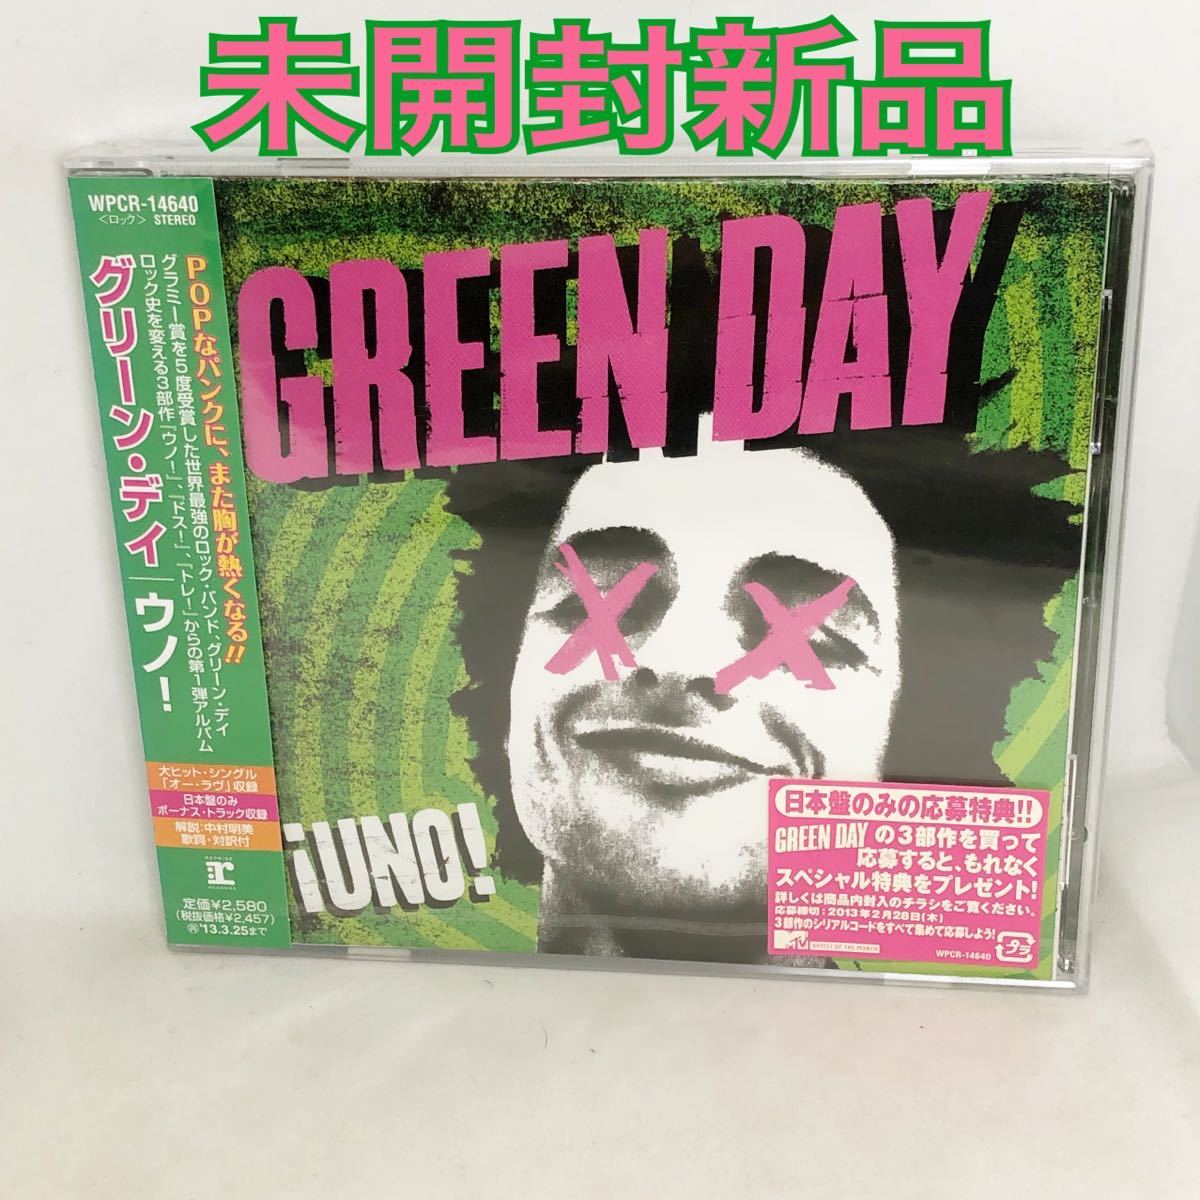 未開封新品 GREEN DAY 『ウノ!』 UNO! 日本盤 ボーナストラック含む全